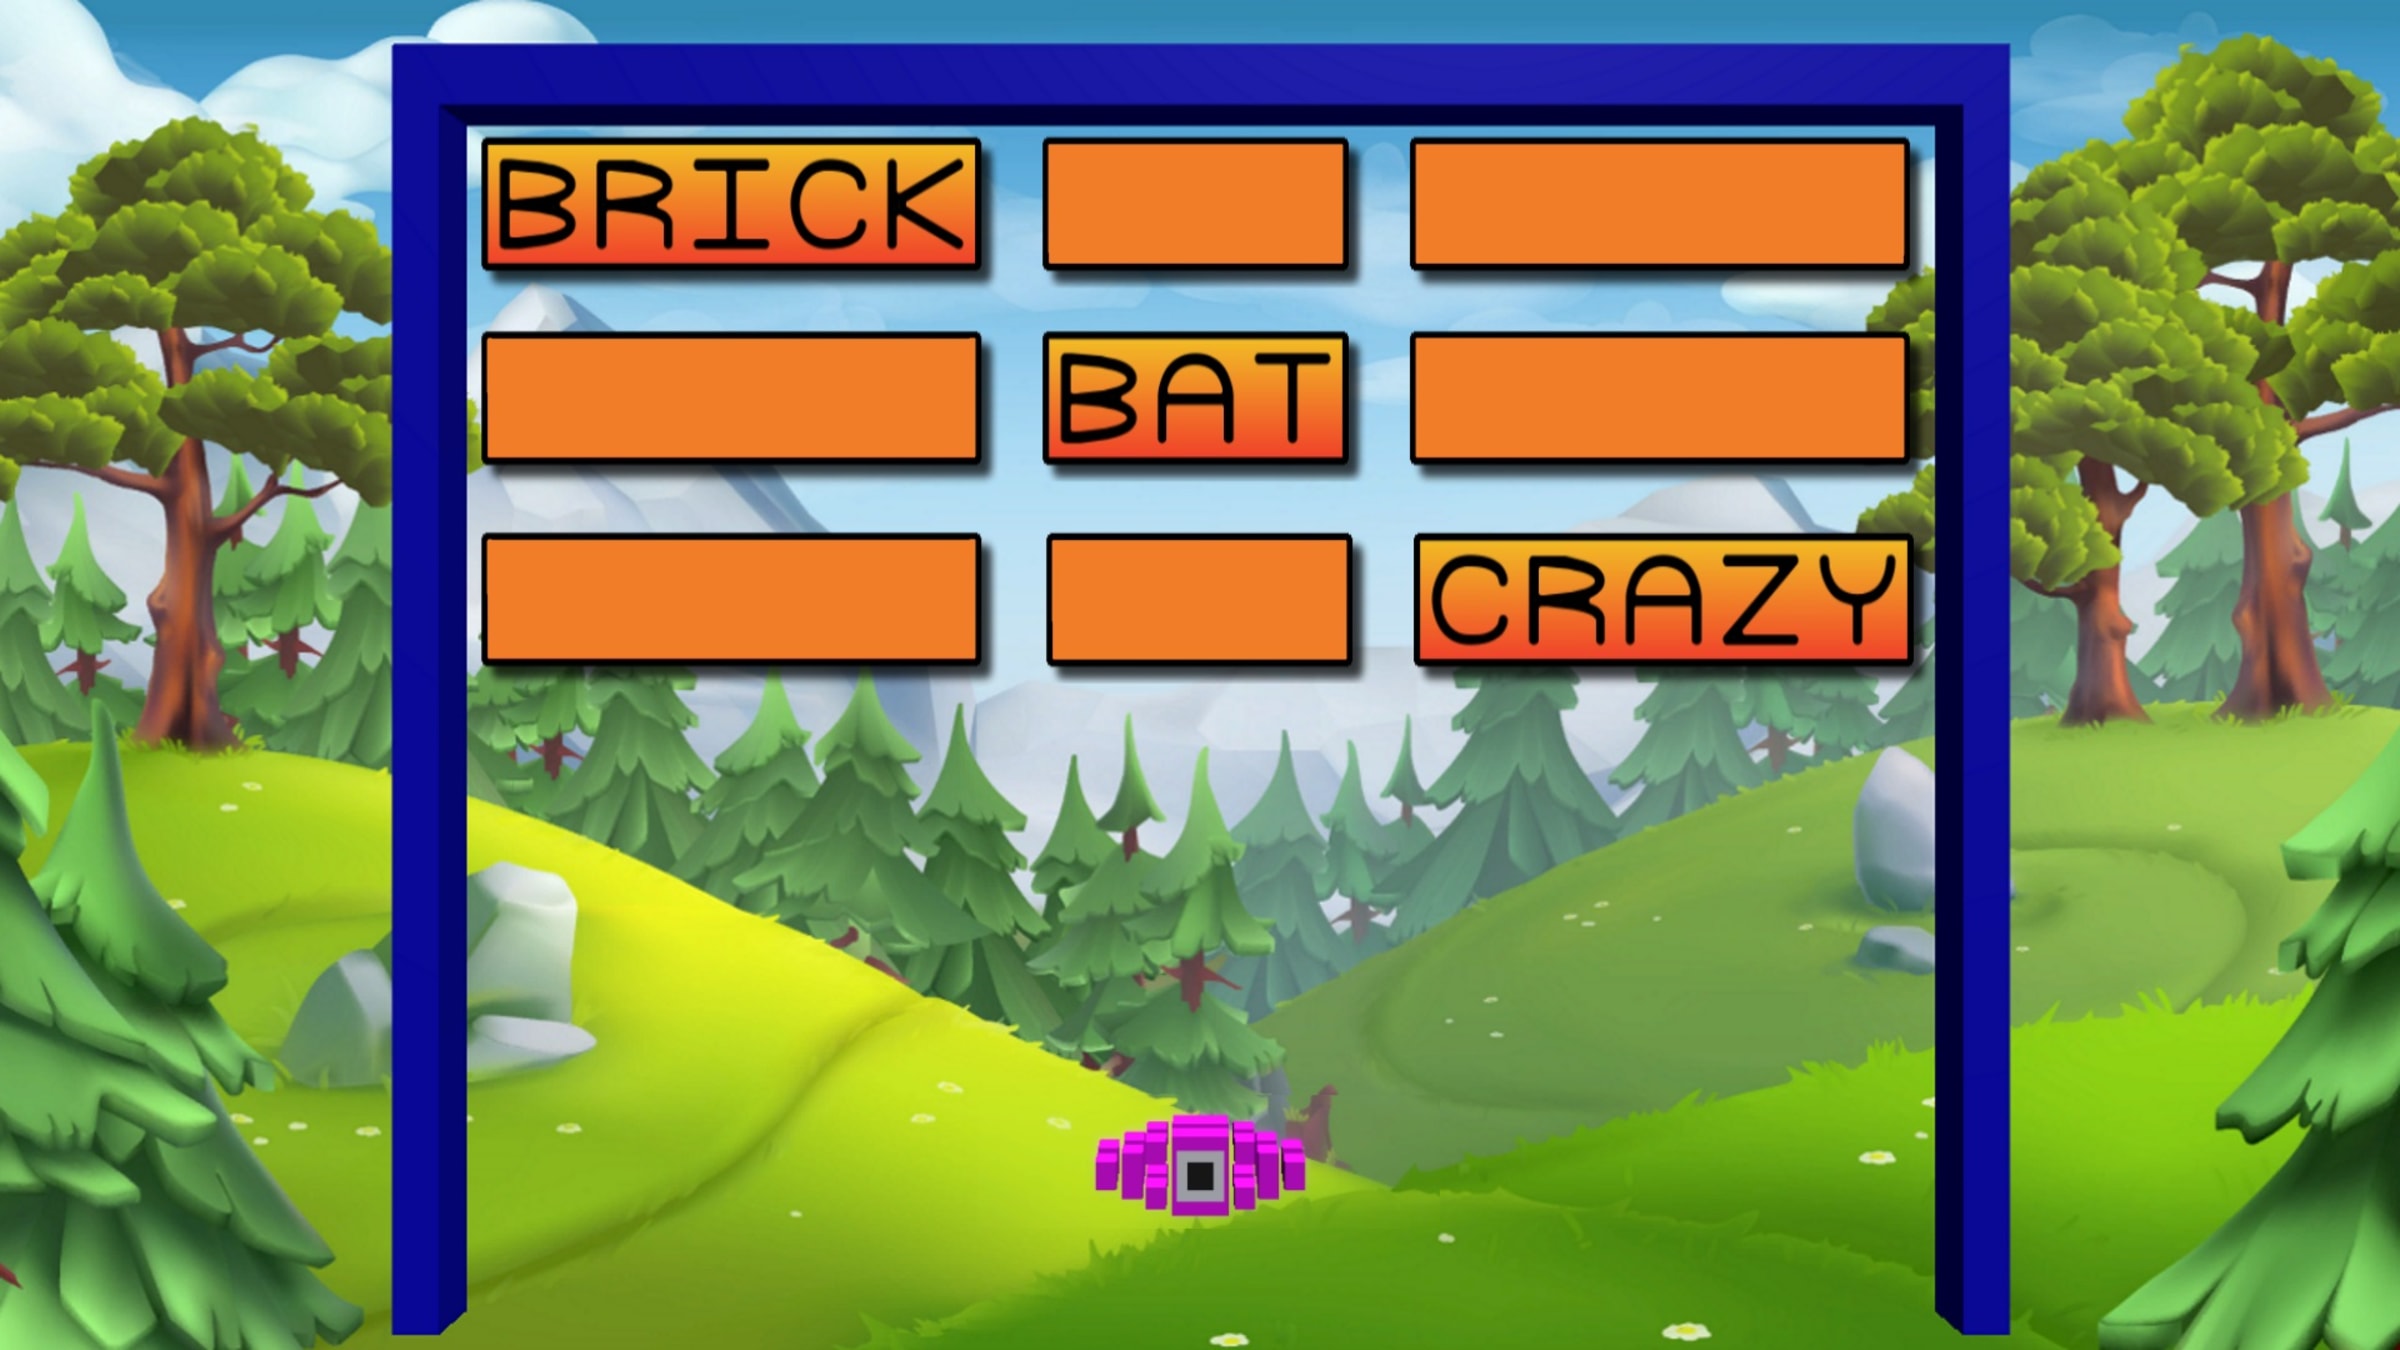 Brick Bat Crazy for Nintendo Switch - Nintendo Official Site